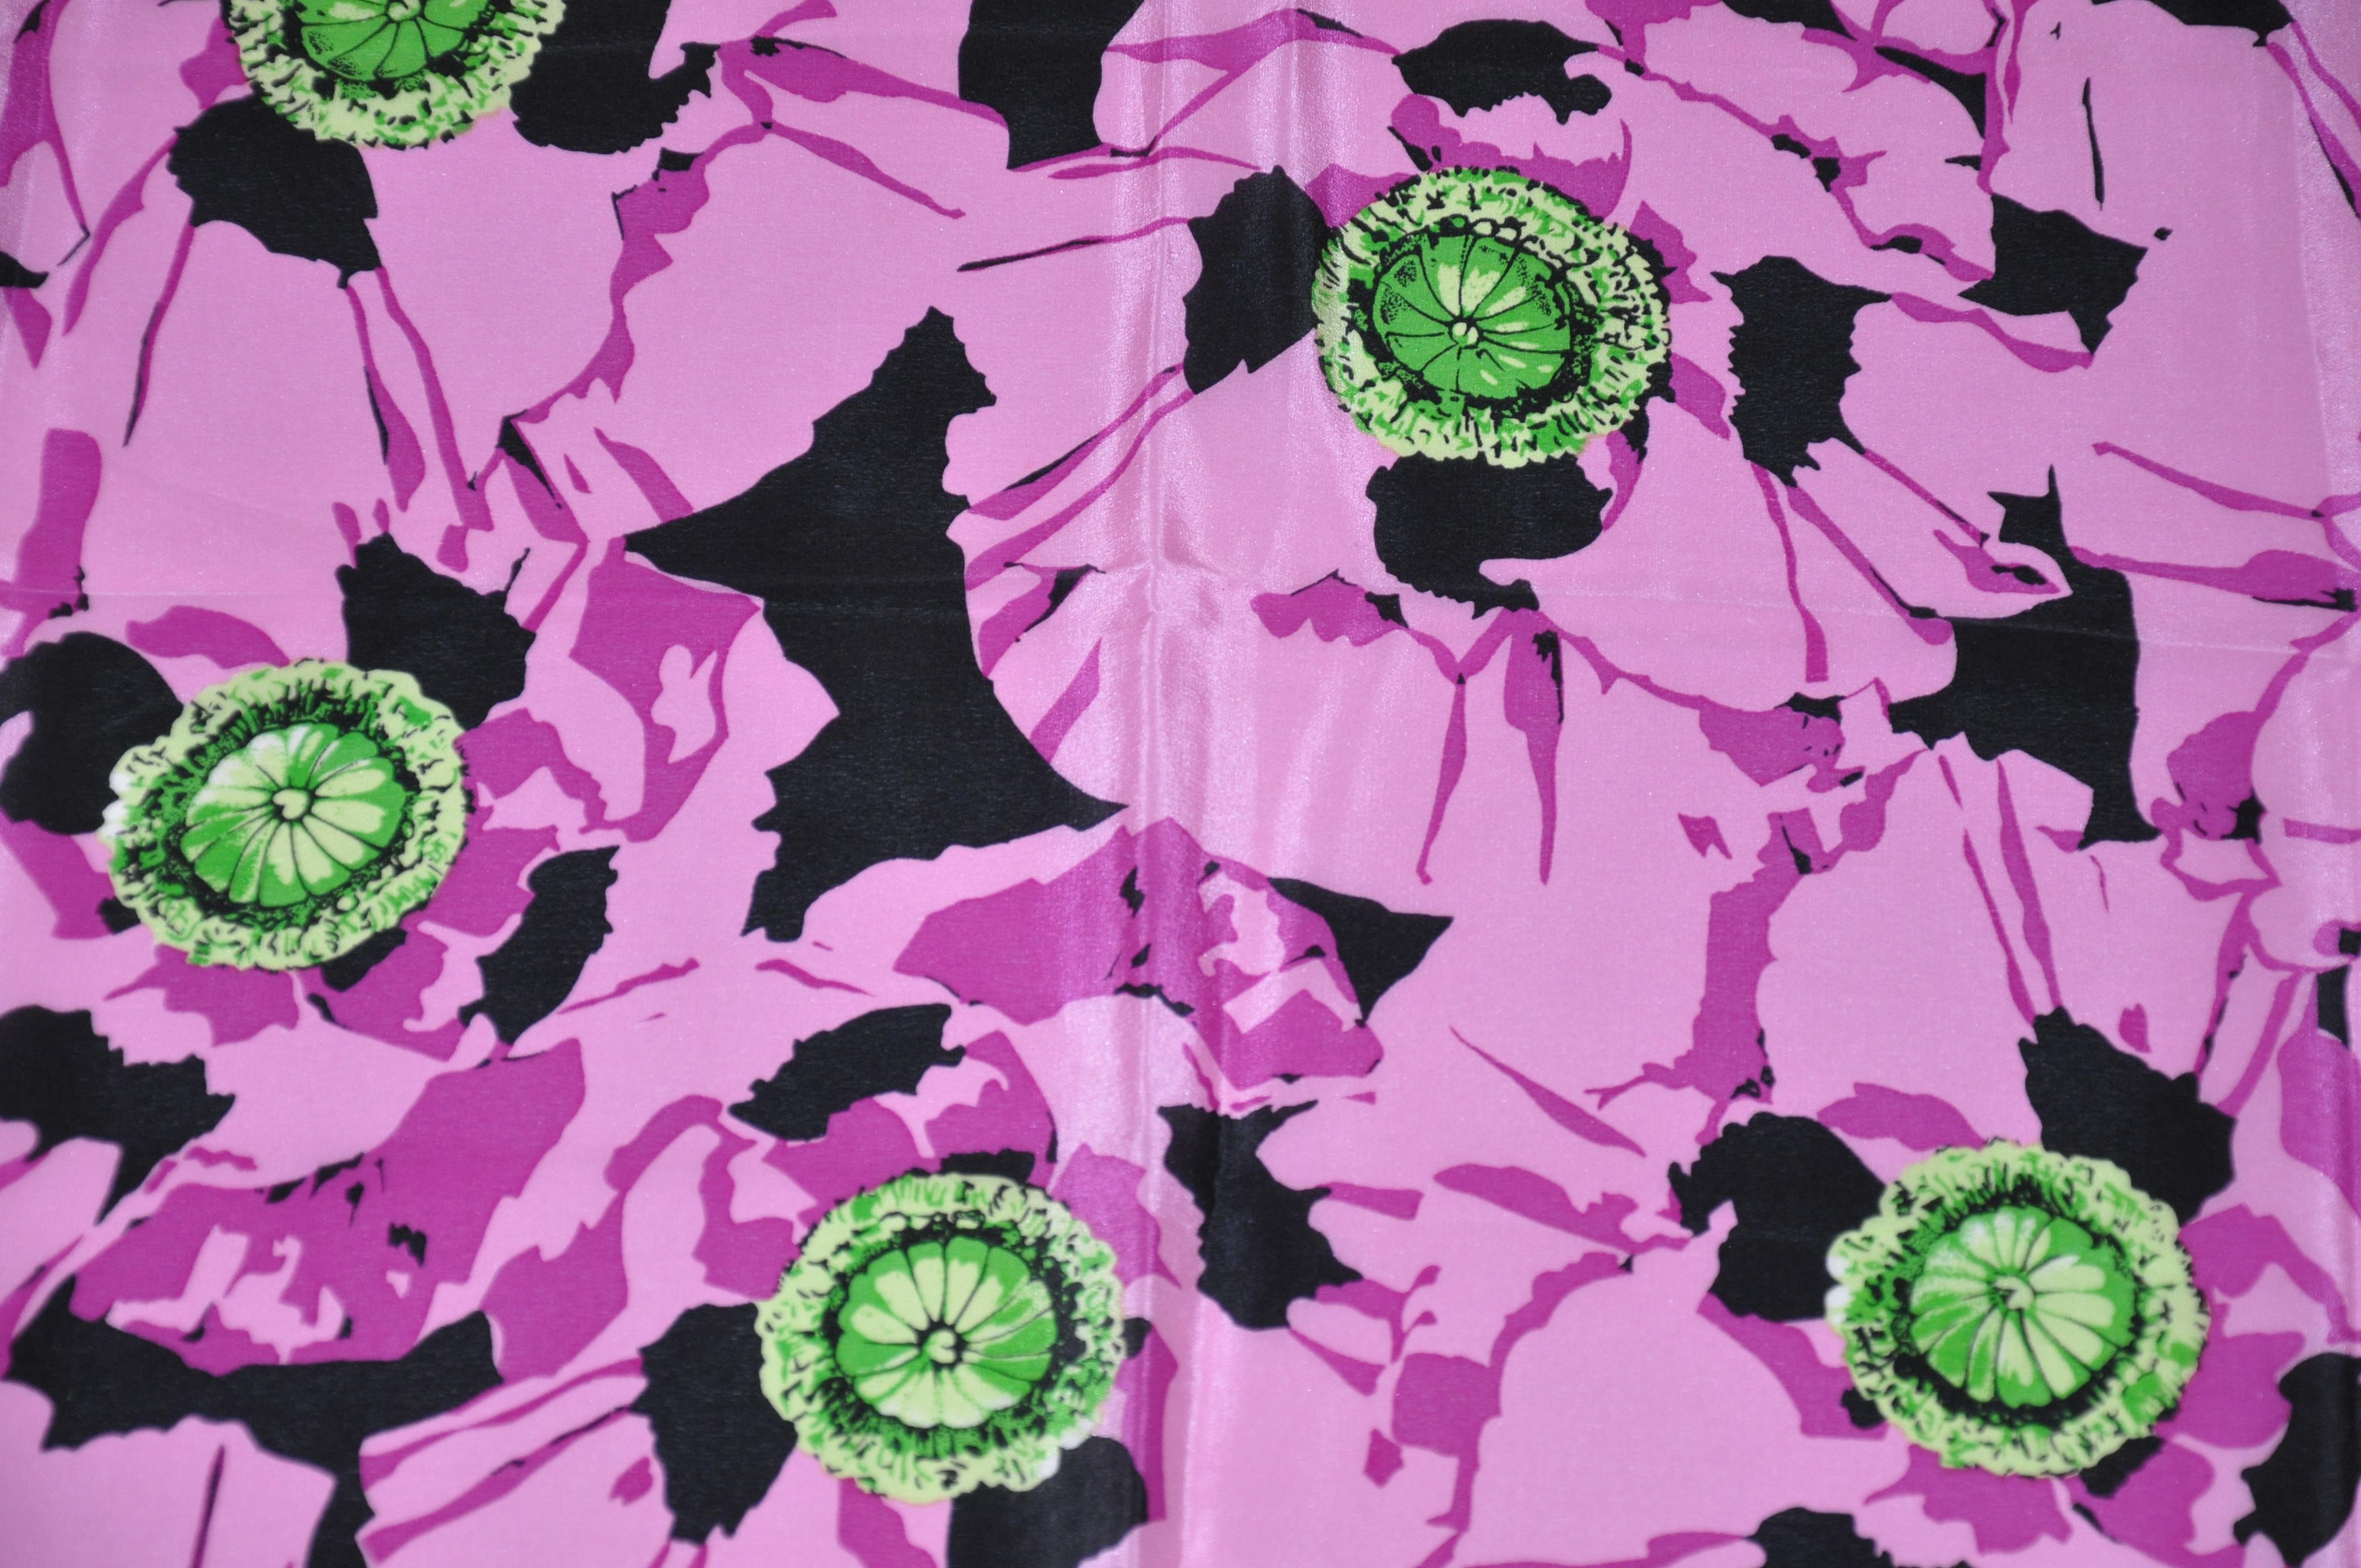      Le foulard en soie Adrienne Vittadini, merveilleusement élégant, présente des bordures florales noires et blanches entourant d'audacieuses nuances de fleurs violettes. Il mesure 30 pouces sur 31 pouces. Bords roulés à la main et fabriqués au